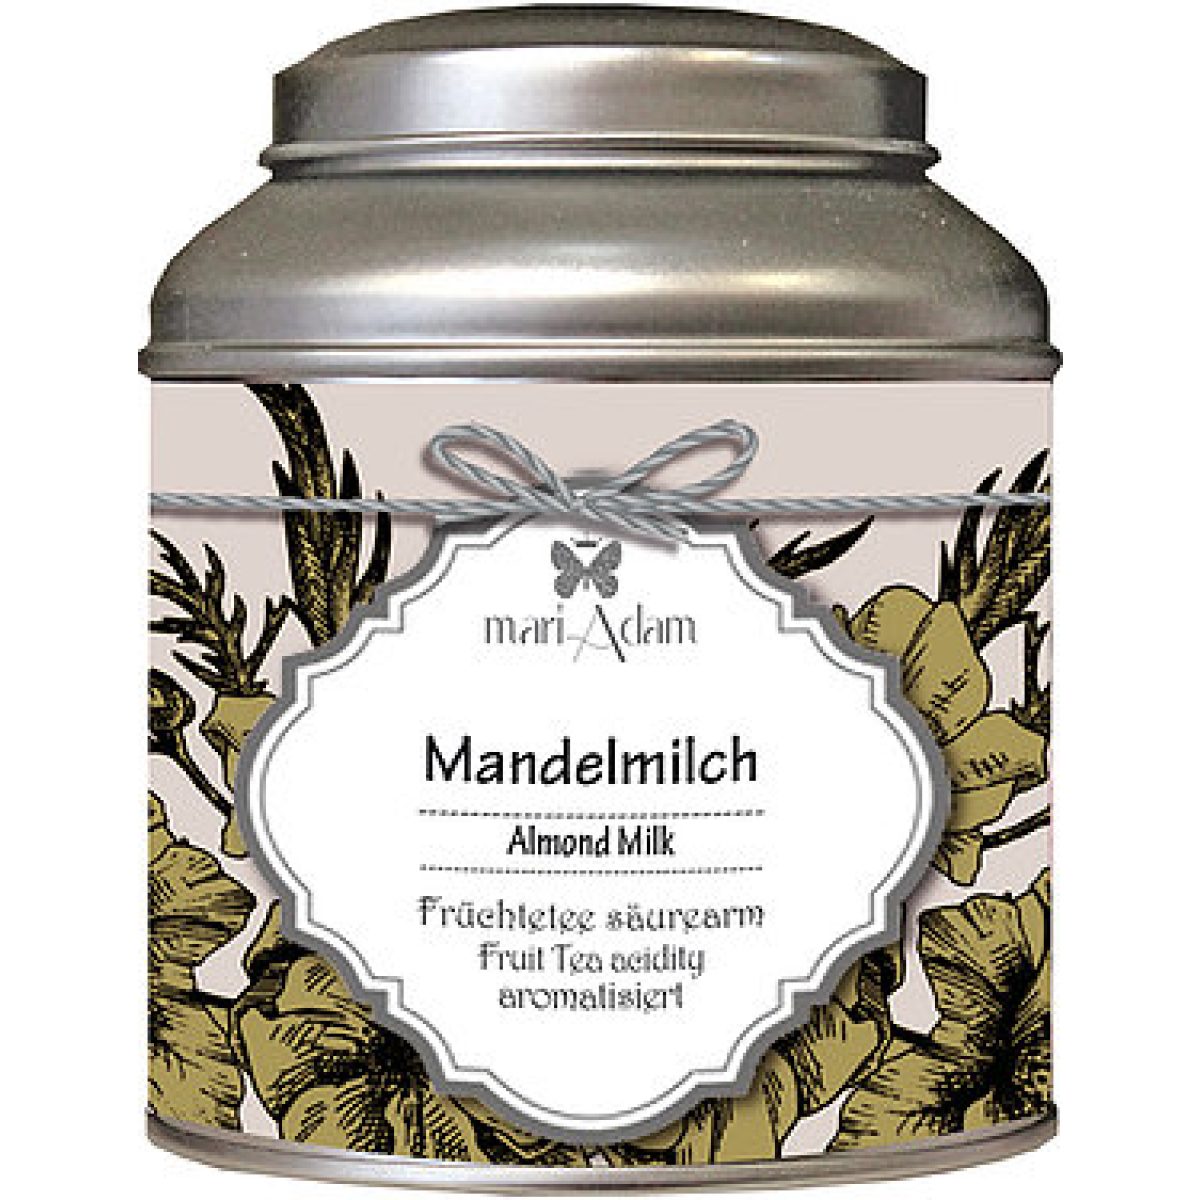 Früchtetee säurearm Mandelmilch 35gr mariAdam www.myhomeandmore.de